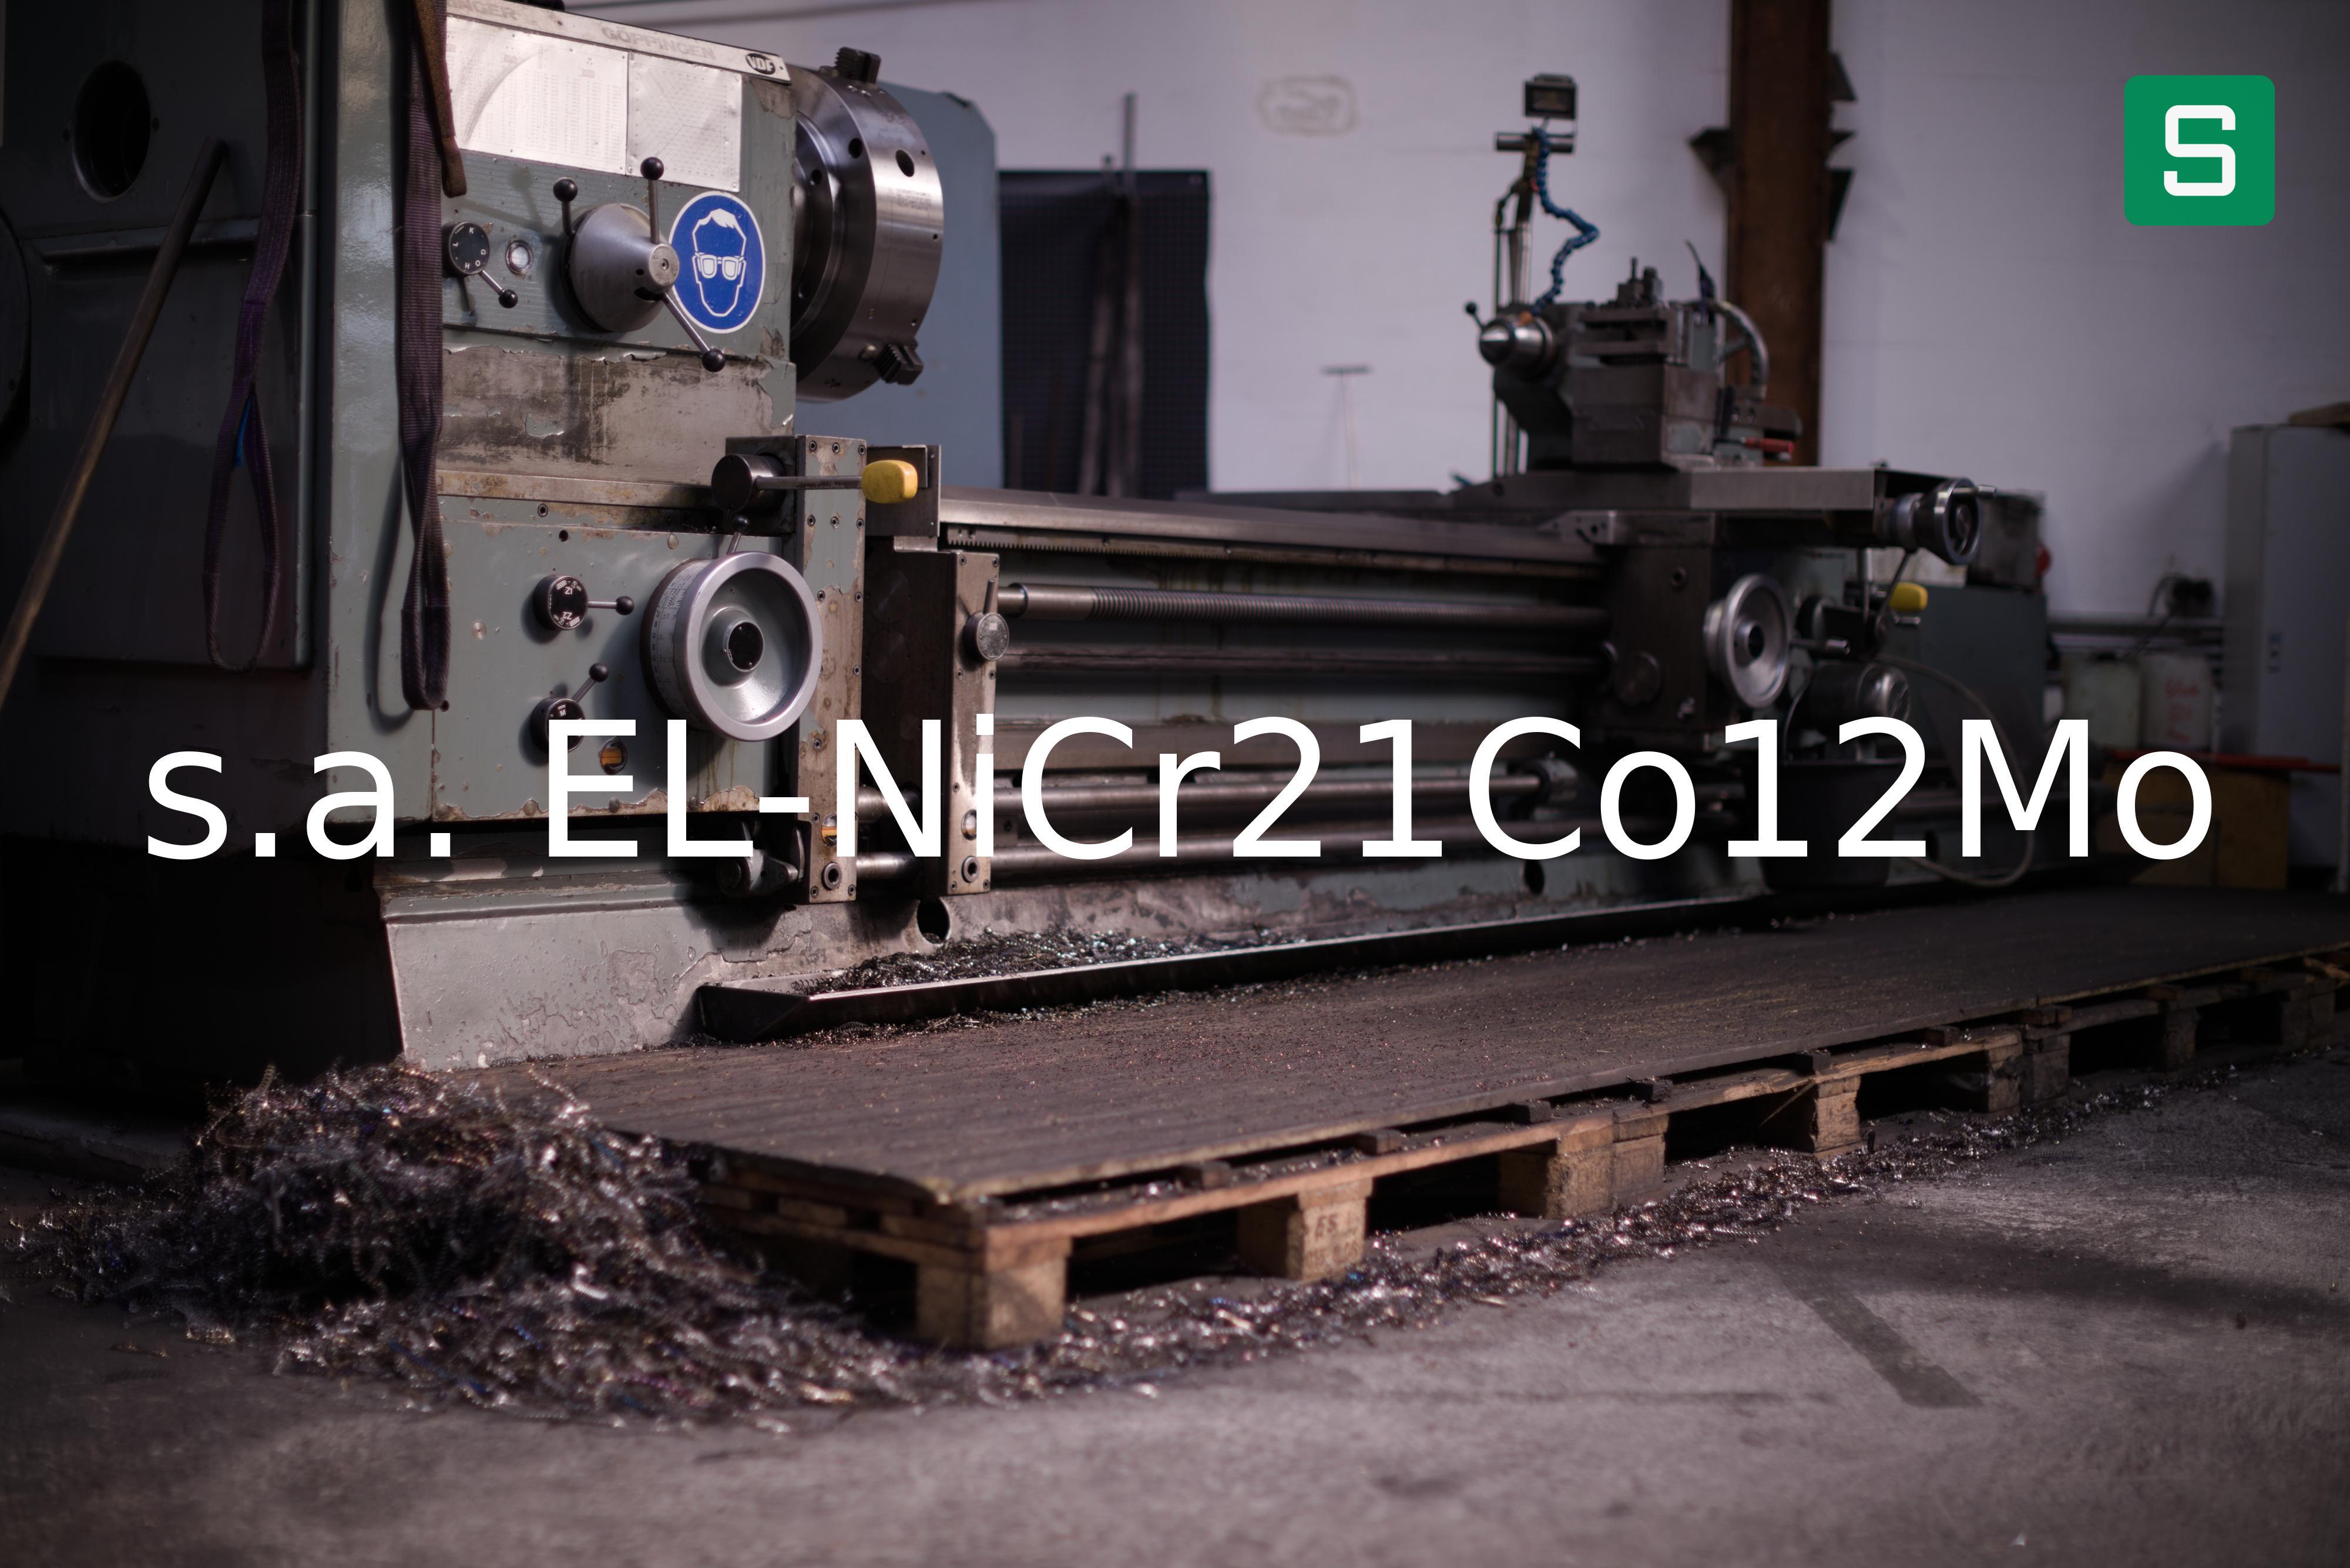 Steel Material: s.a. EL-NiCr21Co12Mo